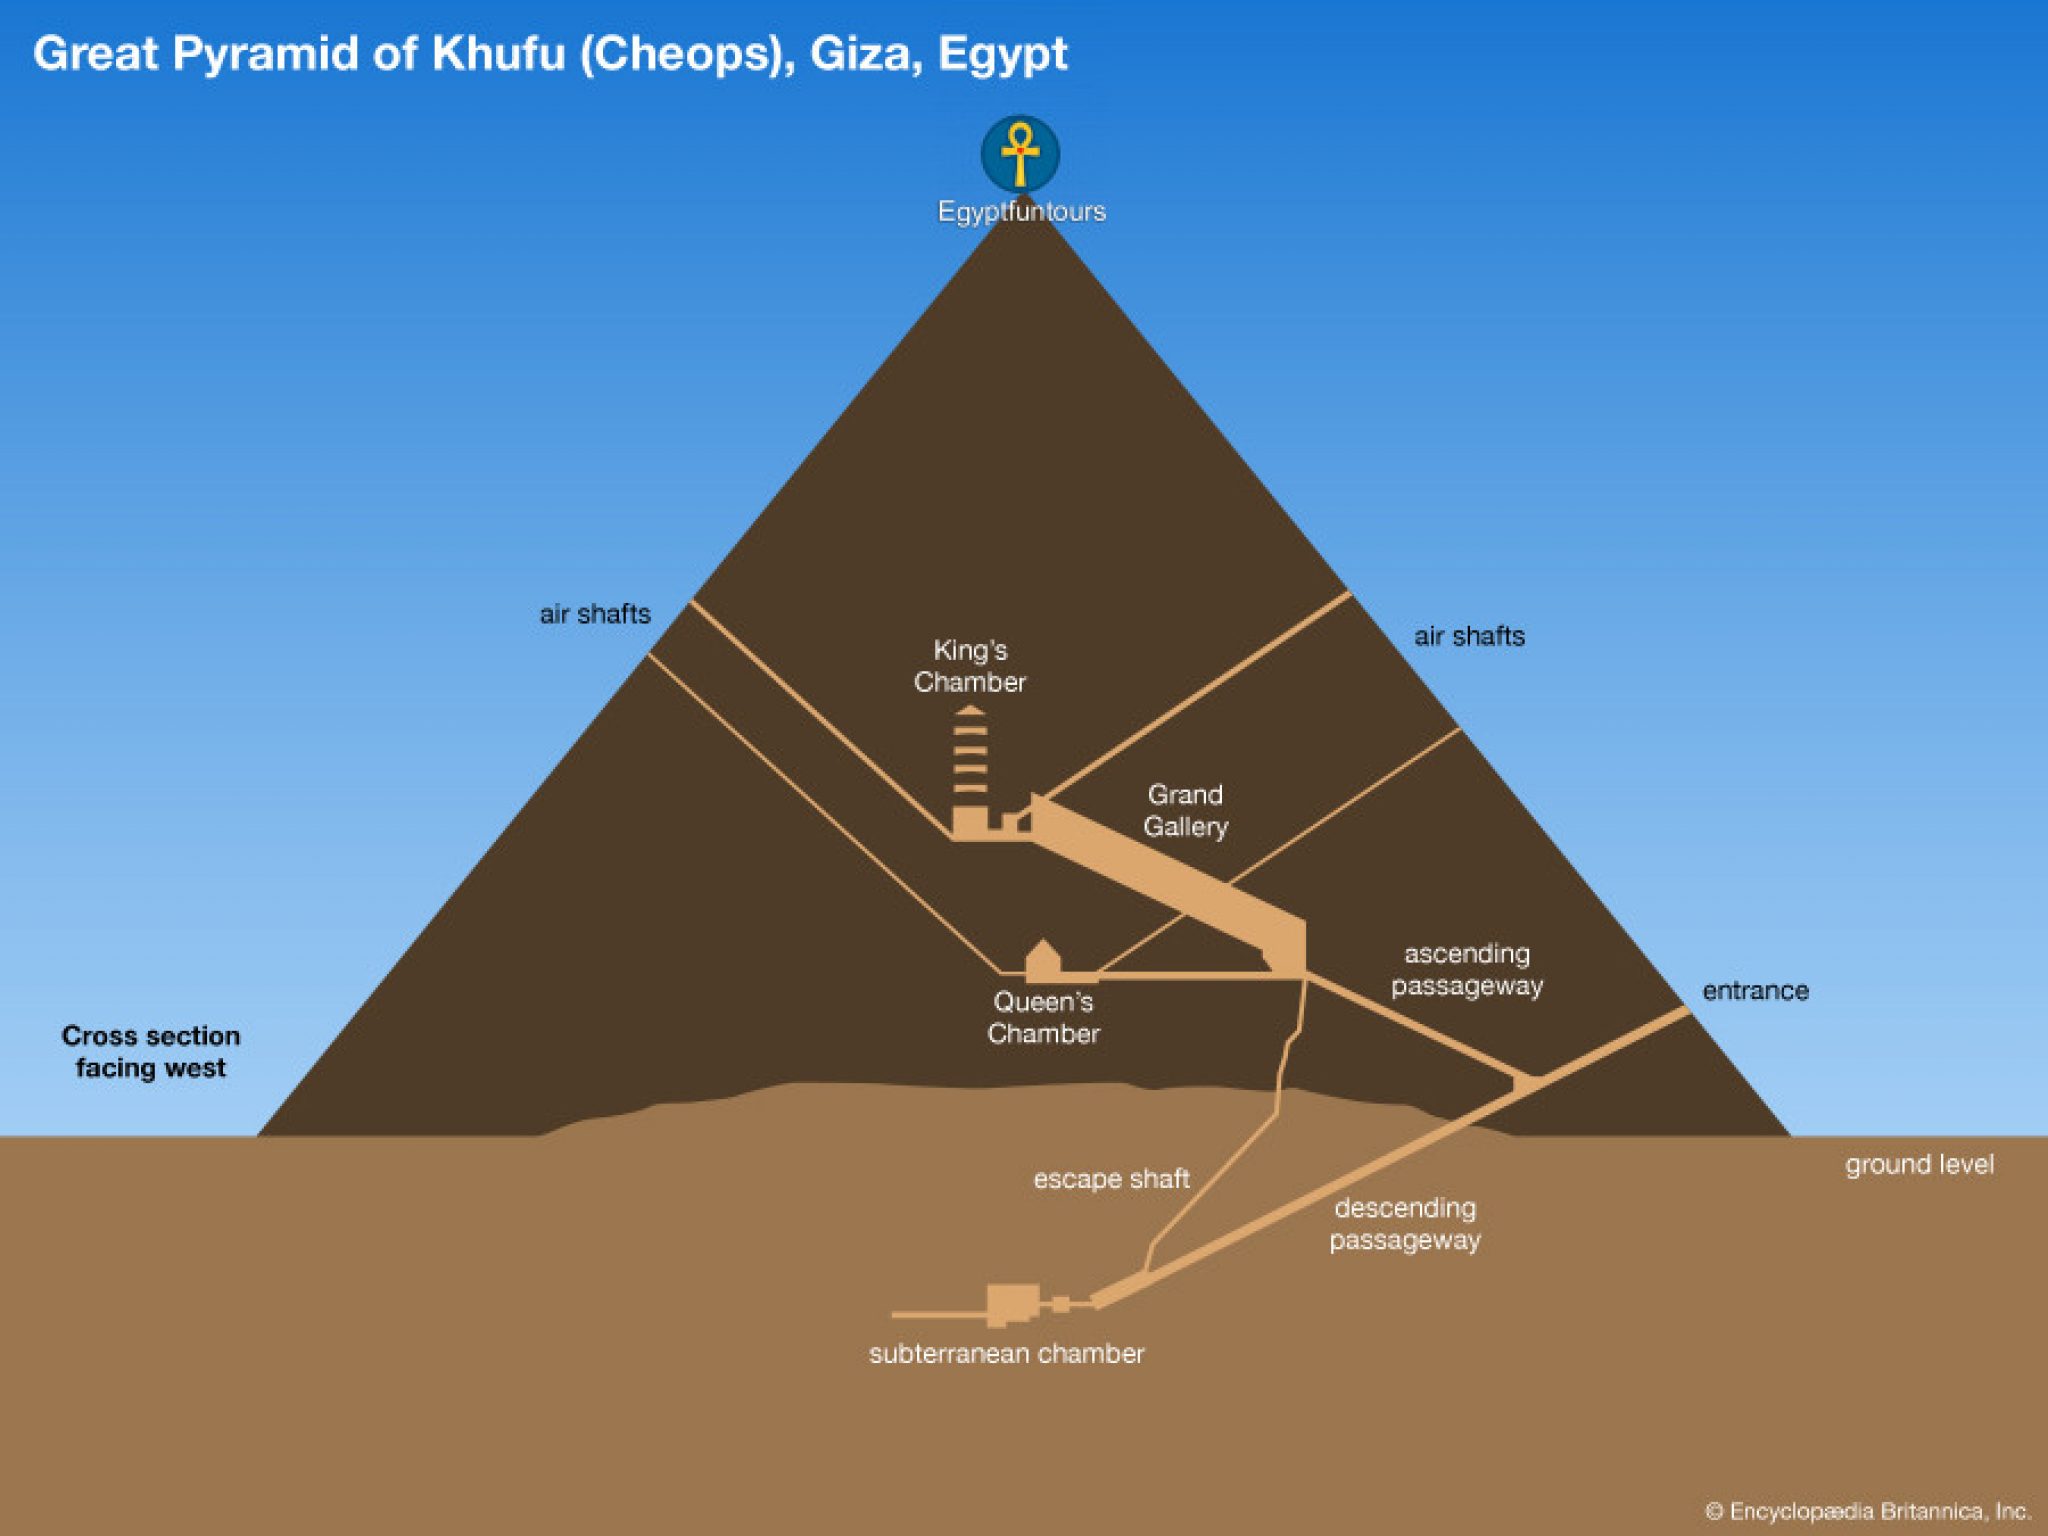 giza-pyramids-complex-cairo-attractions-egypt-fun-tours